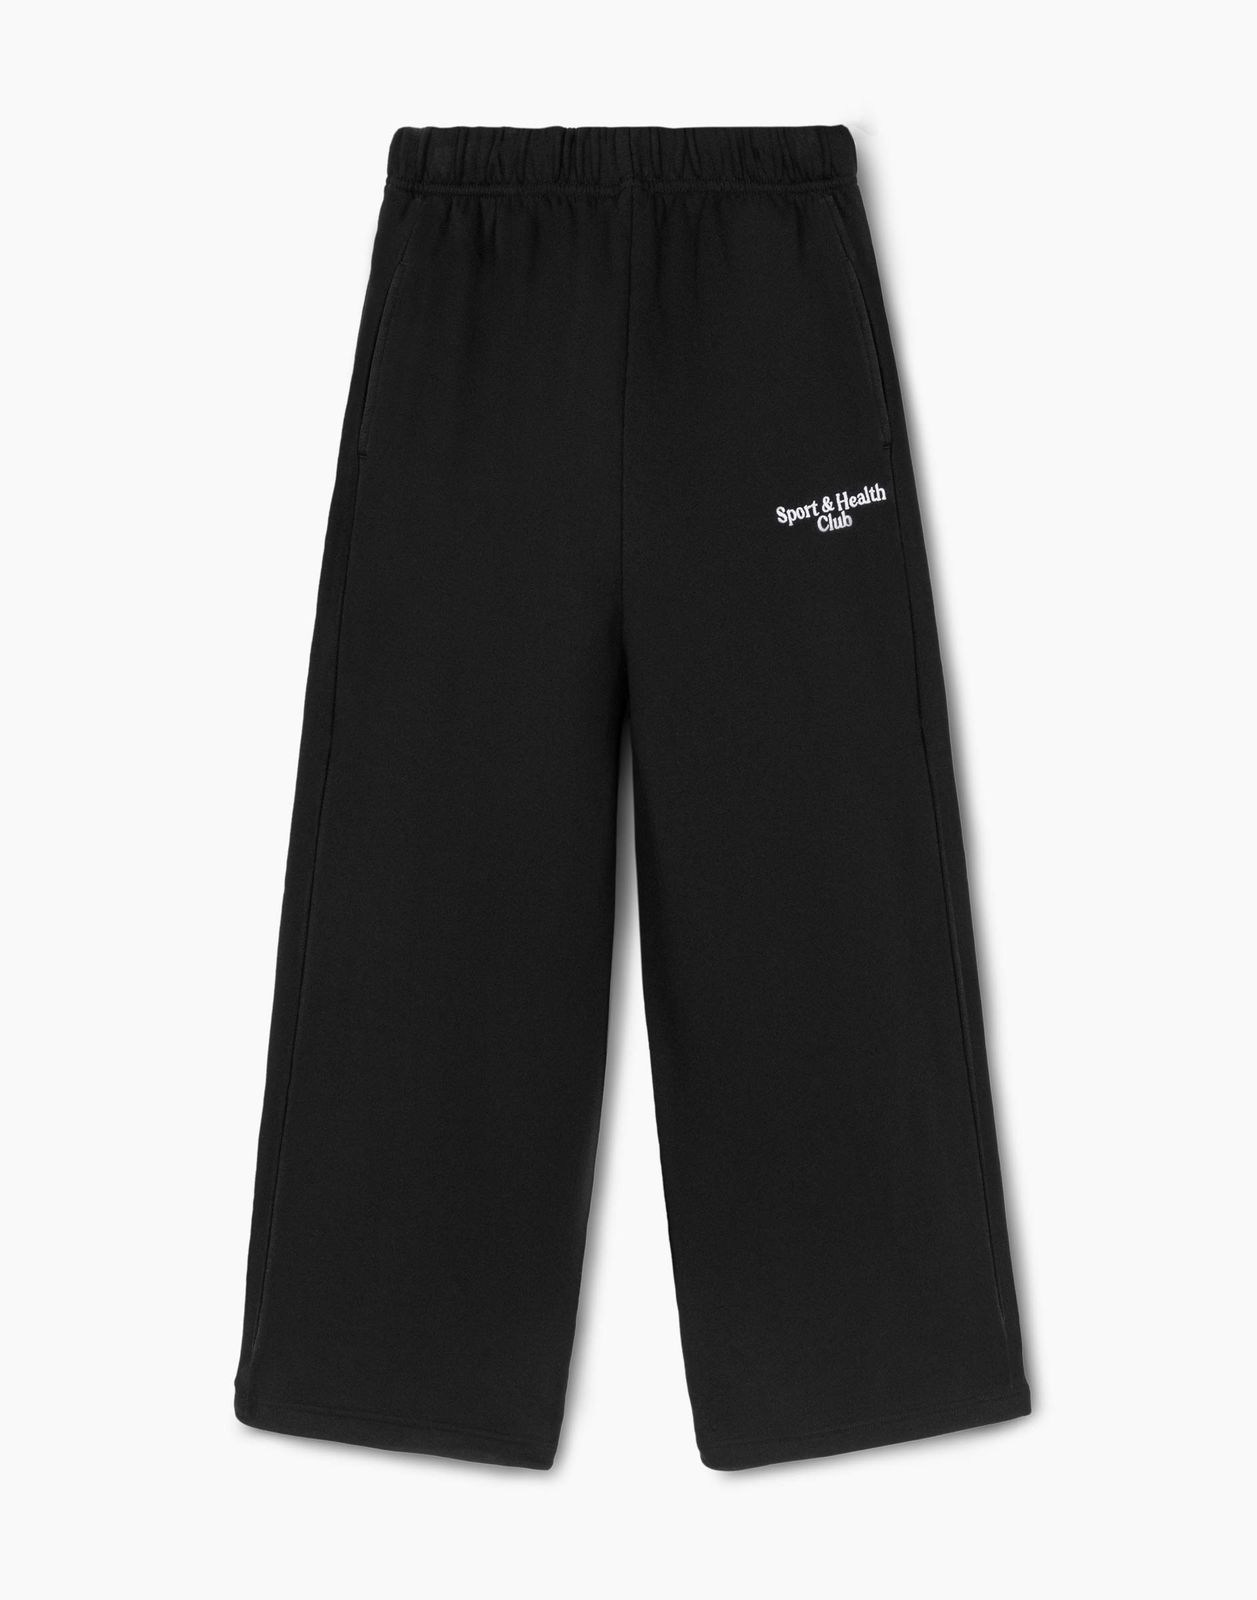 Спортивные брюки женские Gloria Jeans GAC022674 черный M/170